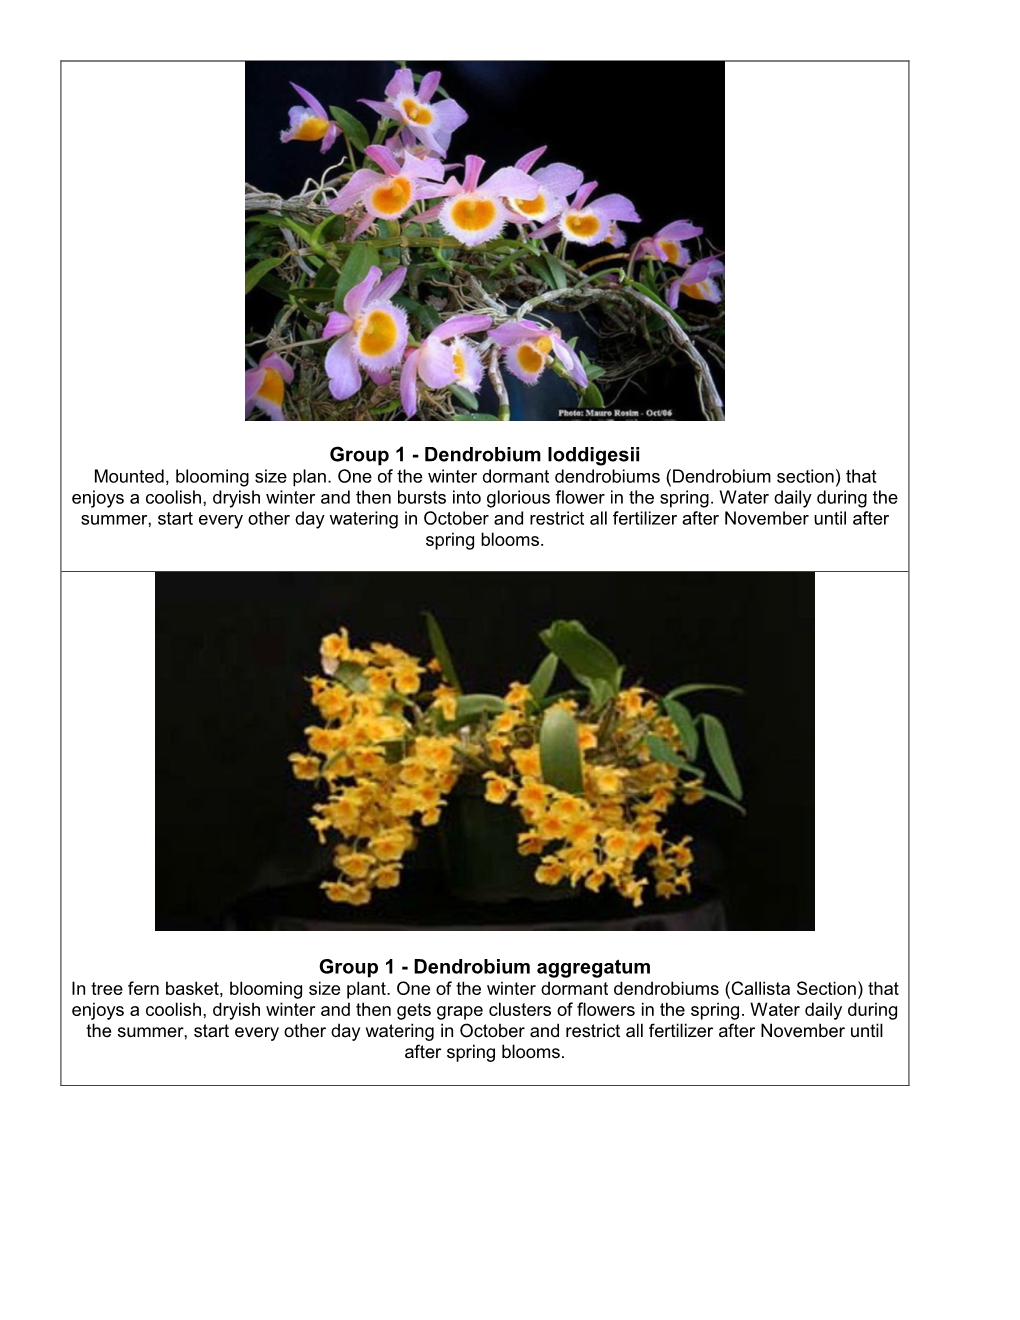 Group 1 - Dendrobium Loddigesii Mounted, Blooming Size Plan